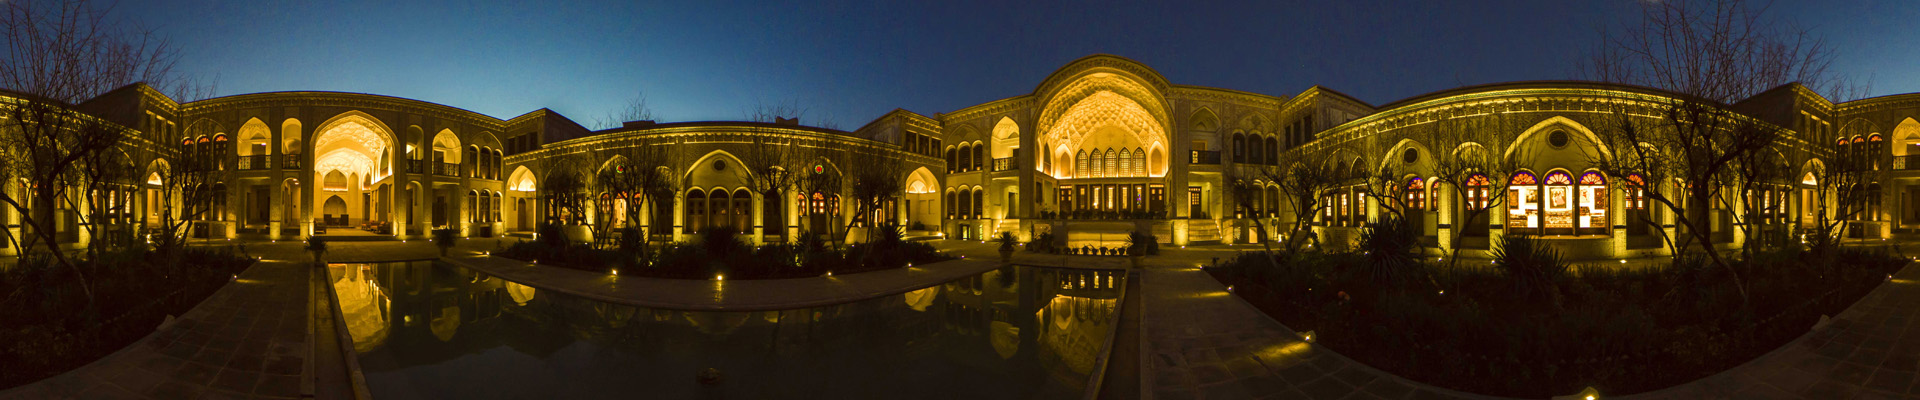 بازدید مجازی با تور مجازی 360 درجه و تور گوگل از جاذبه های گردشگری ایران در محیط واقعیت مجازی ایران